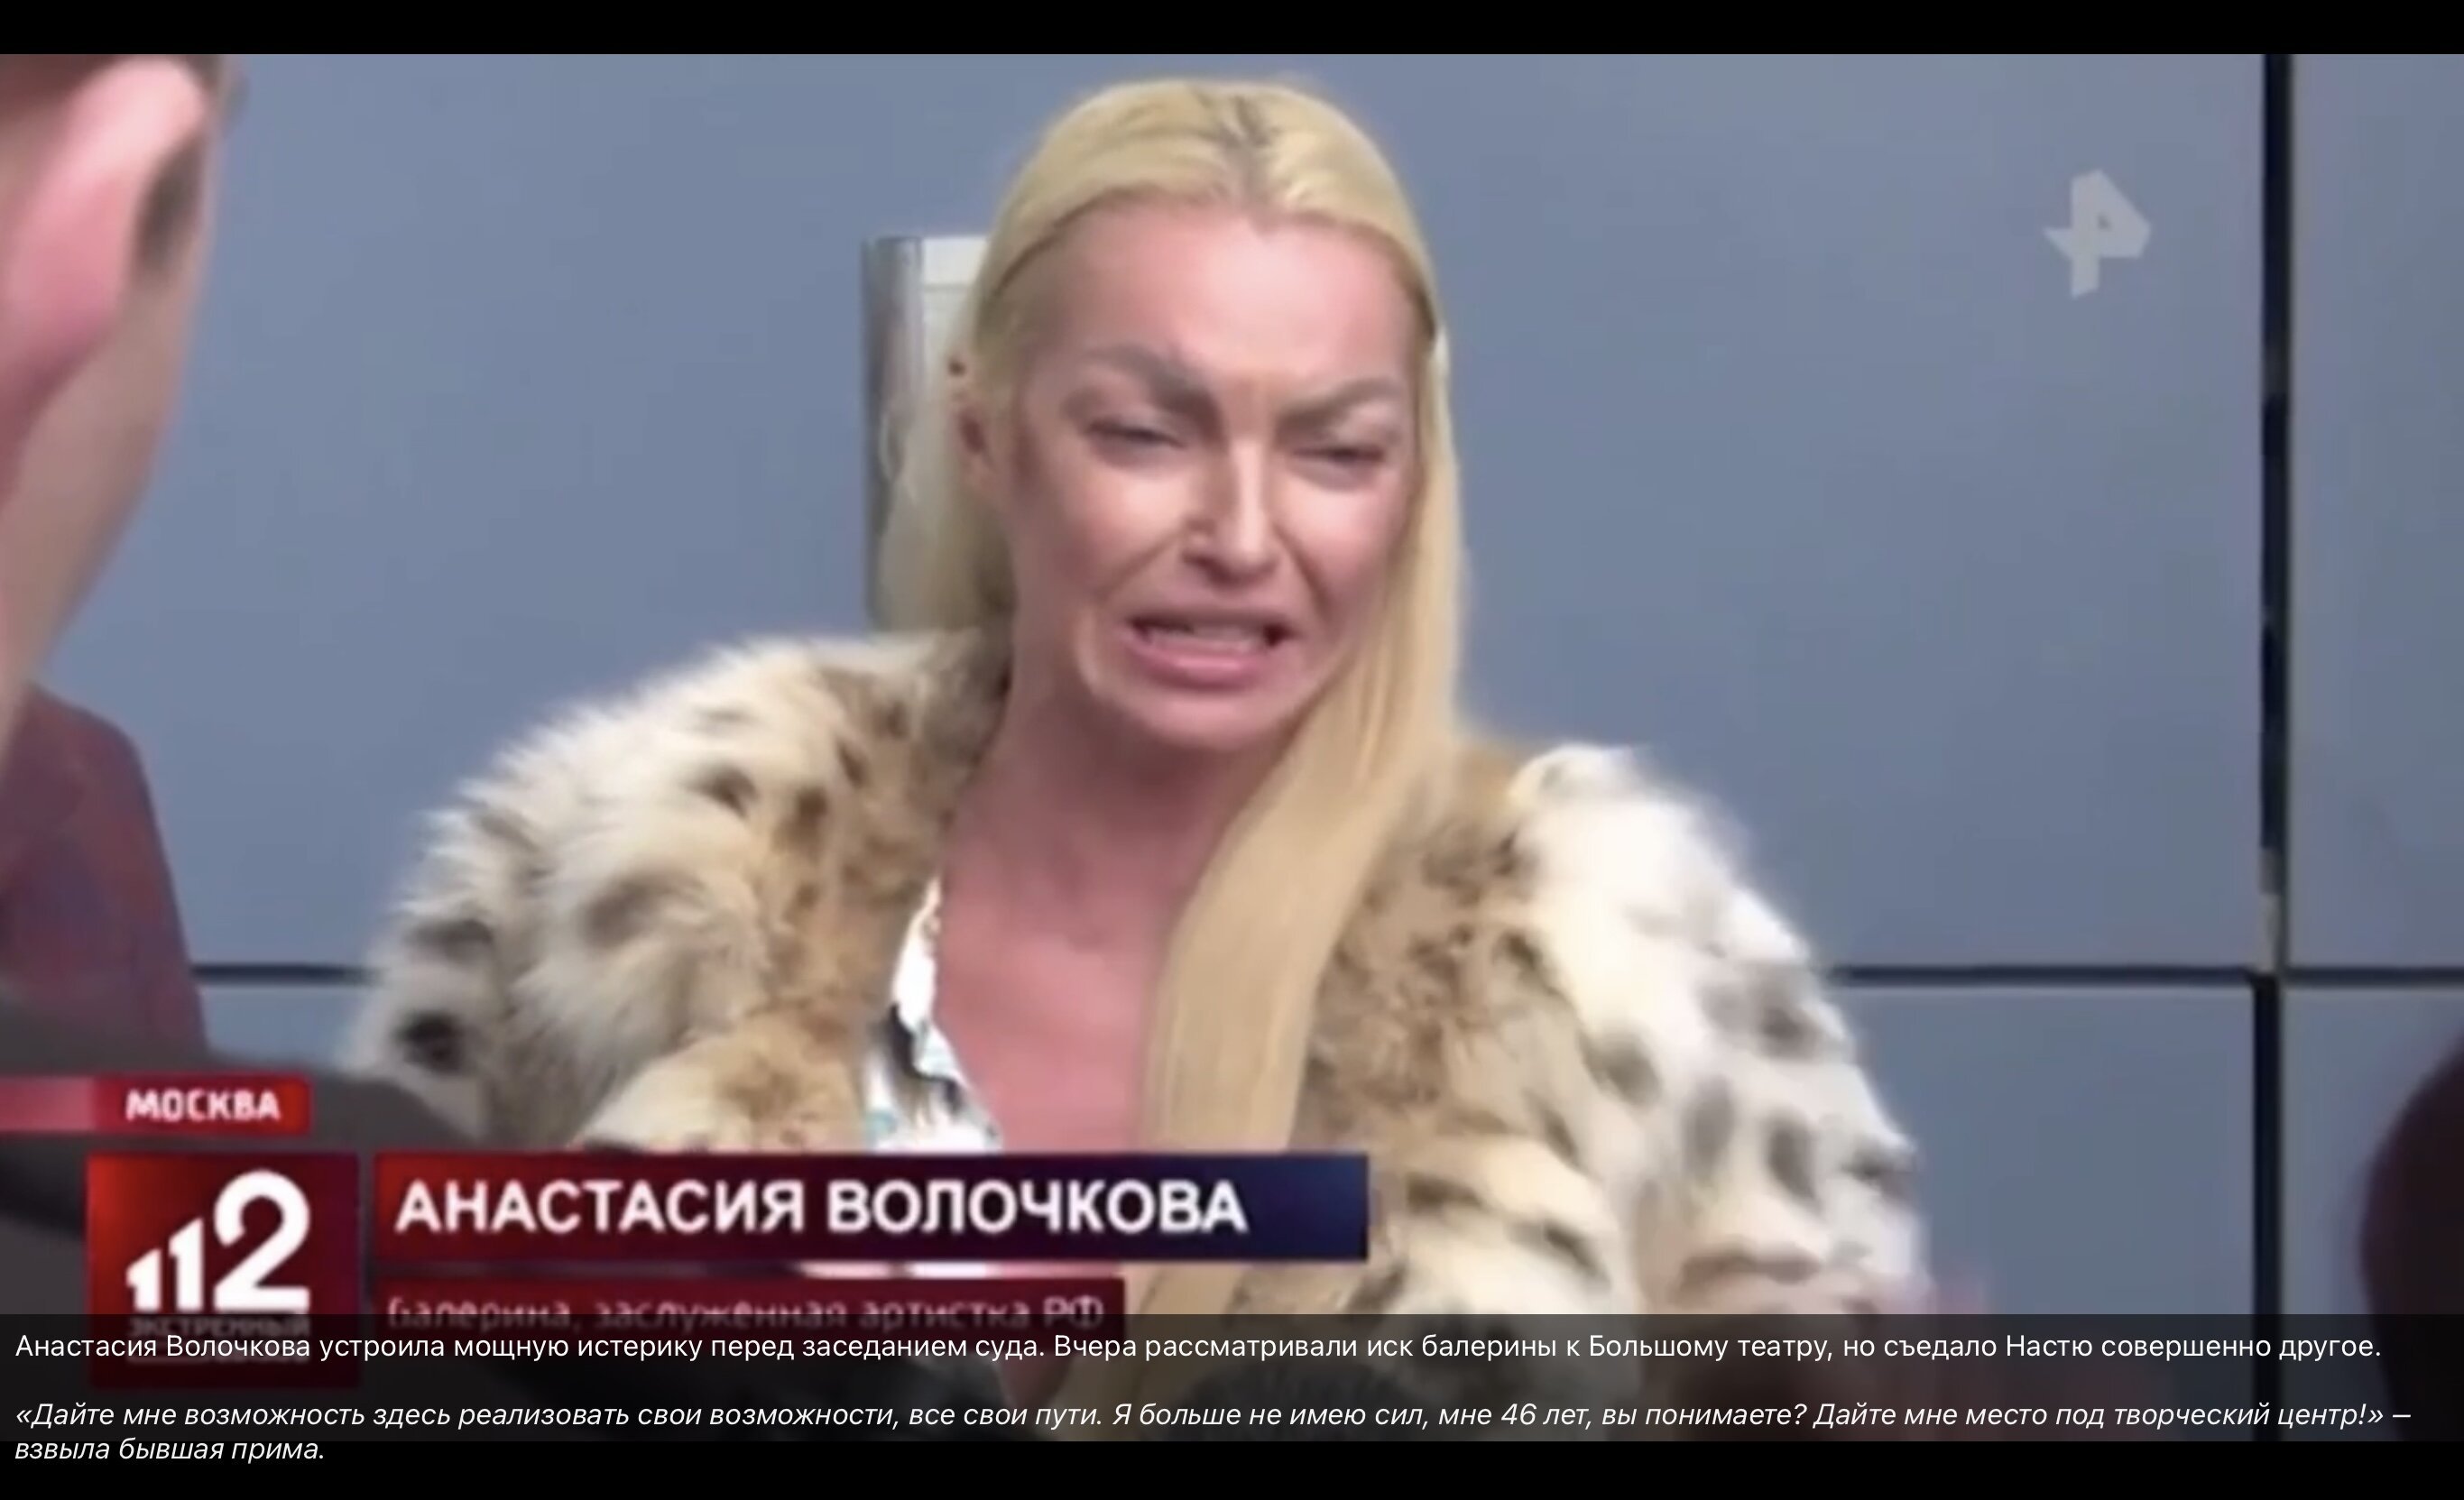 Анастасия Волочкова расплакалась перед судебным заседанием